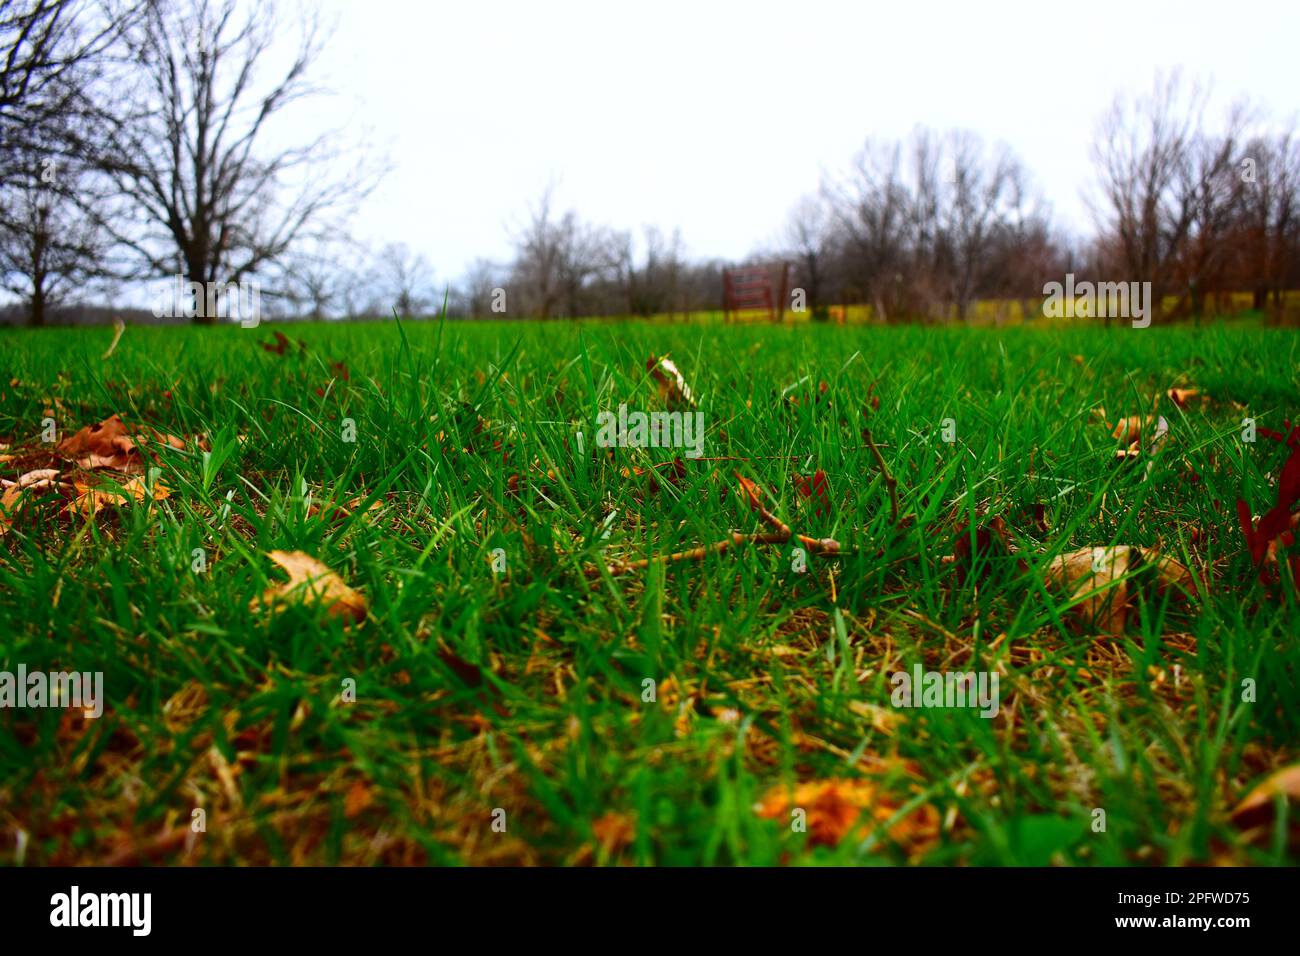 Une faible perspective d'une pelouse verdoyante dans les régions rurales du Missouri, du Missouri, des États-Unis, des États-Unis et des États-Unis. Début du printemps. Couleurs vives. Banque D'Images